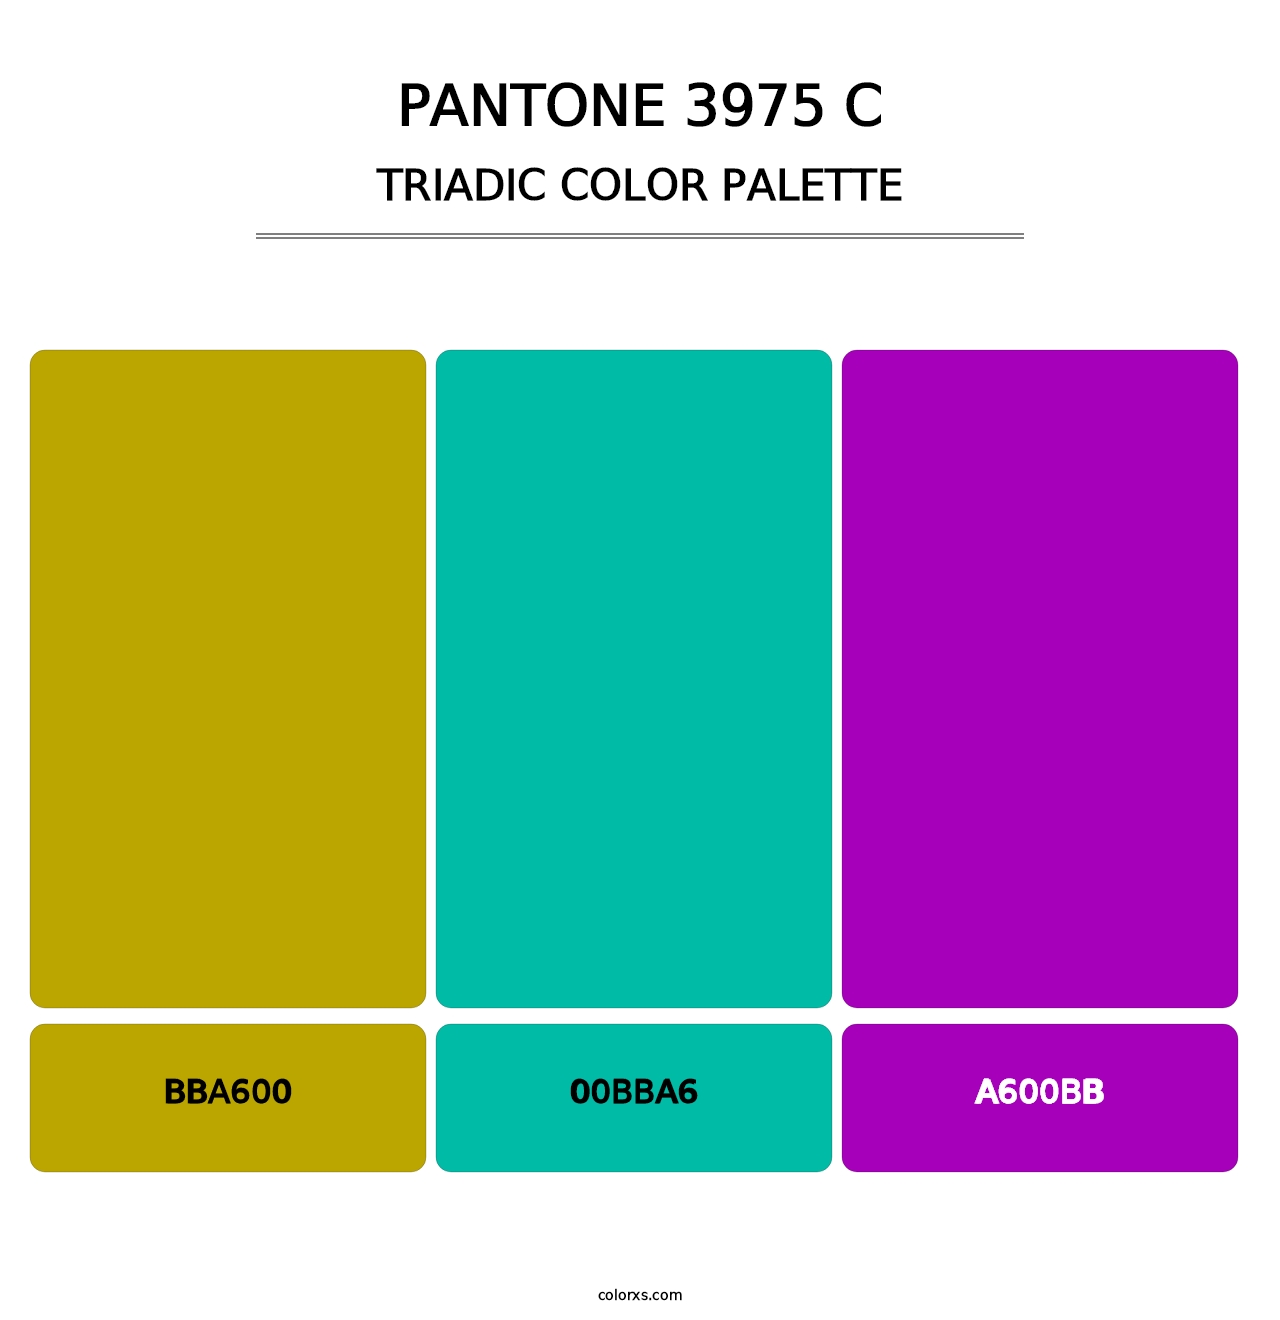 PANTONE 3975 C - Triadic Color Palette